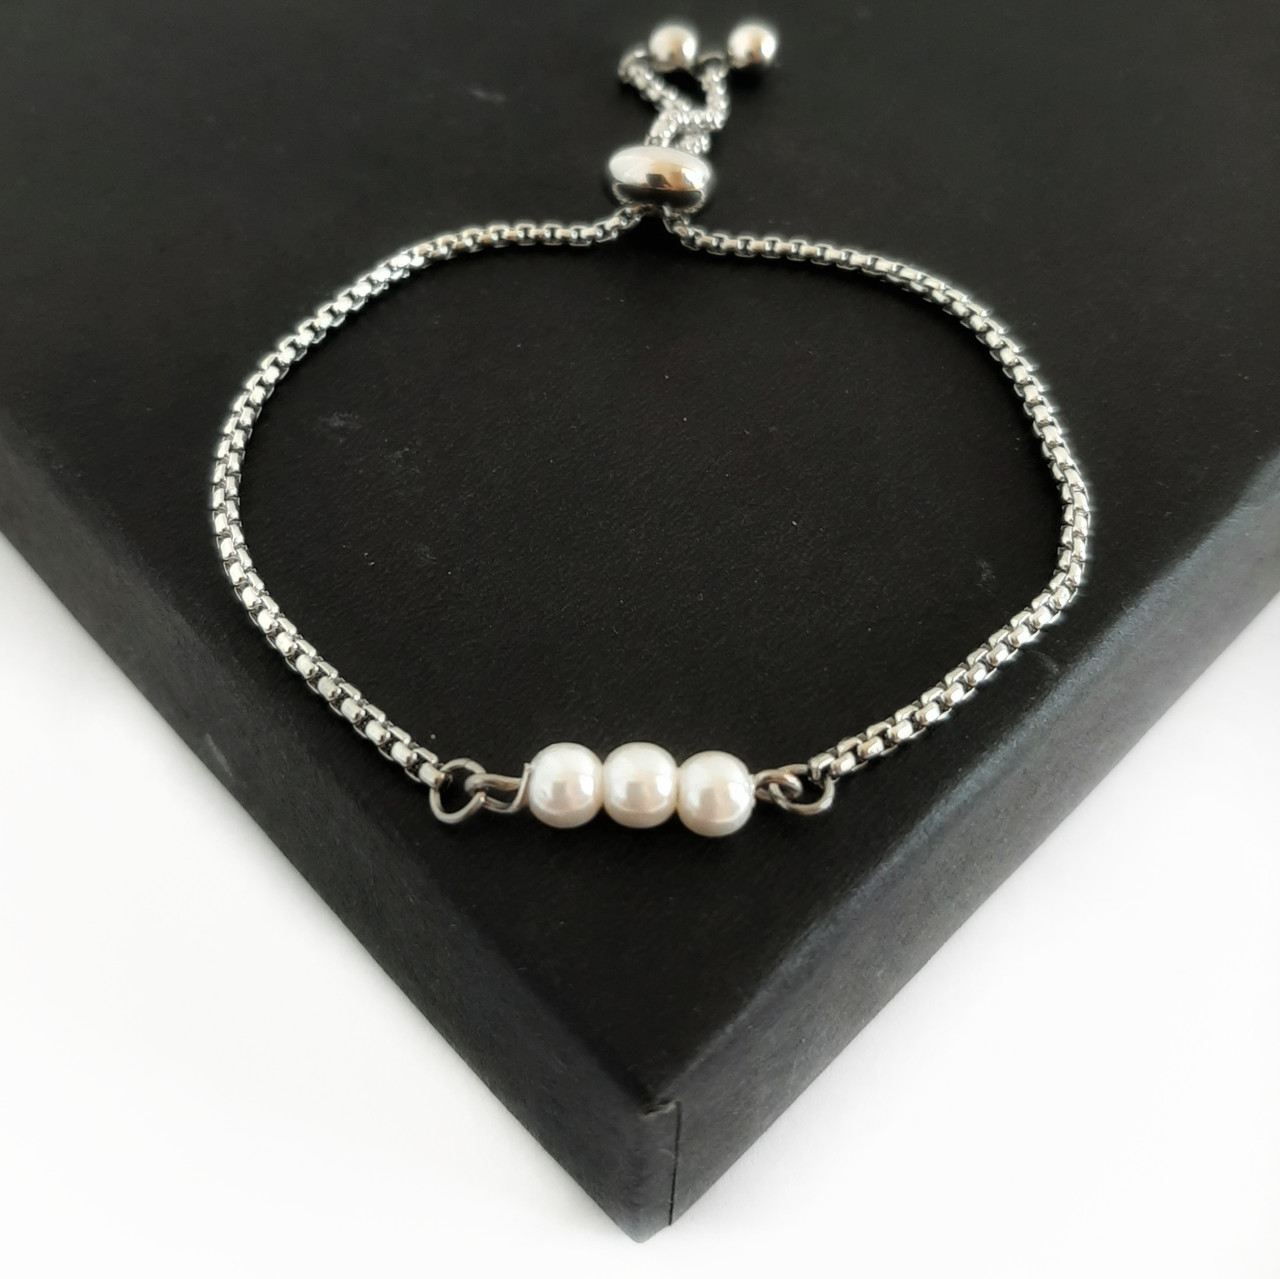 Buy Genuine 8mm Pearl Bracelet, Adjustable Pearl Bracelet, Large Freshwater Pearl  Bracelet, Sterling and Pearl Bracelet Online in India - Etsy